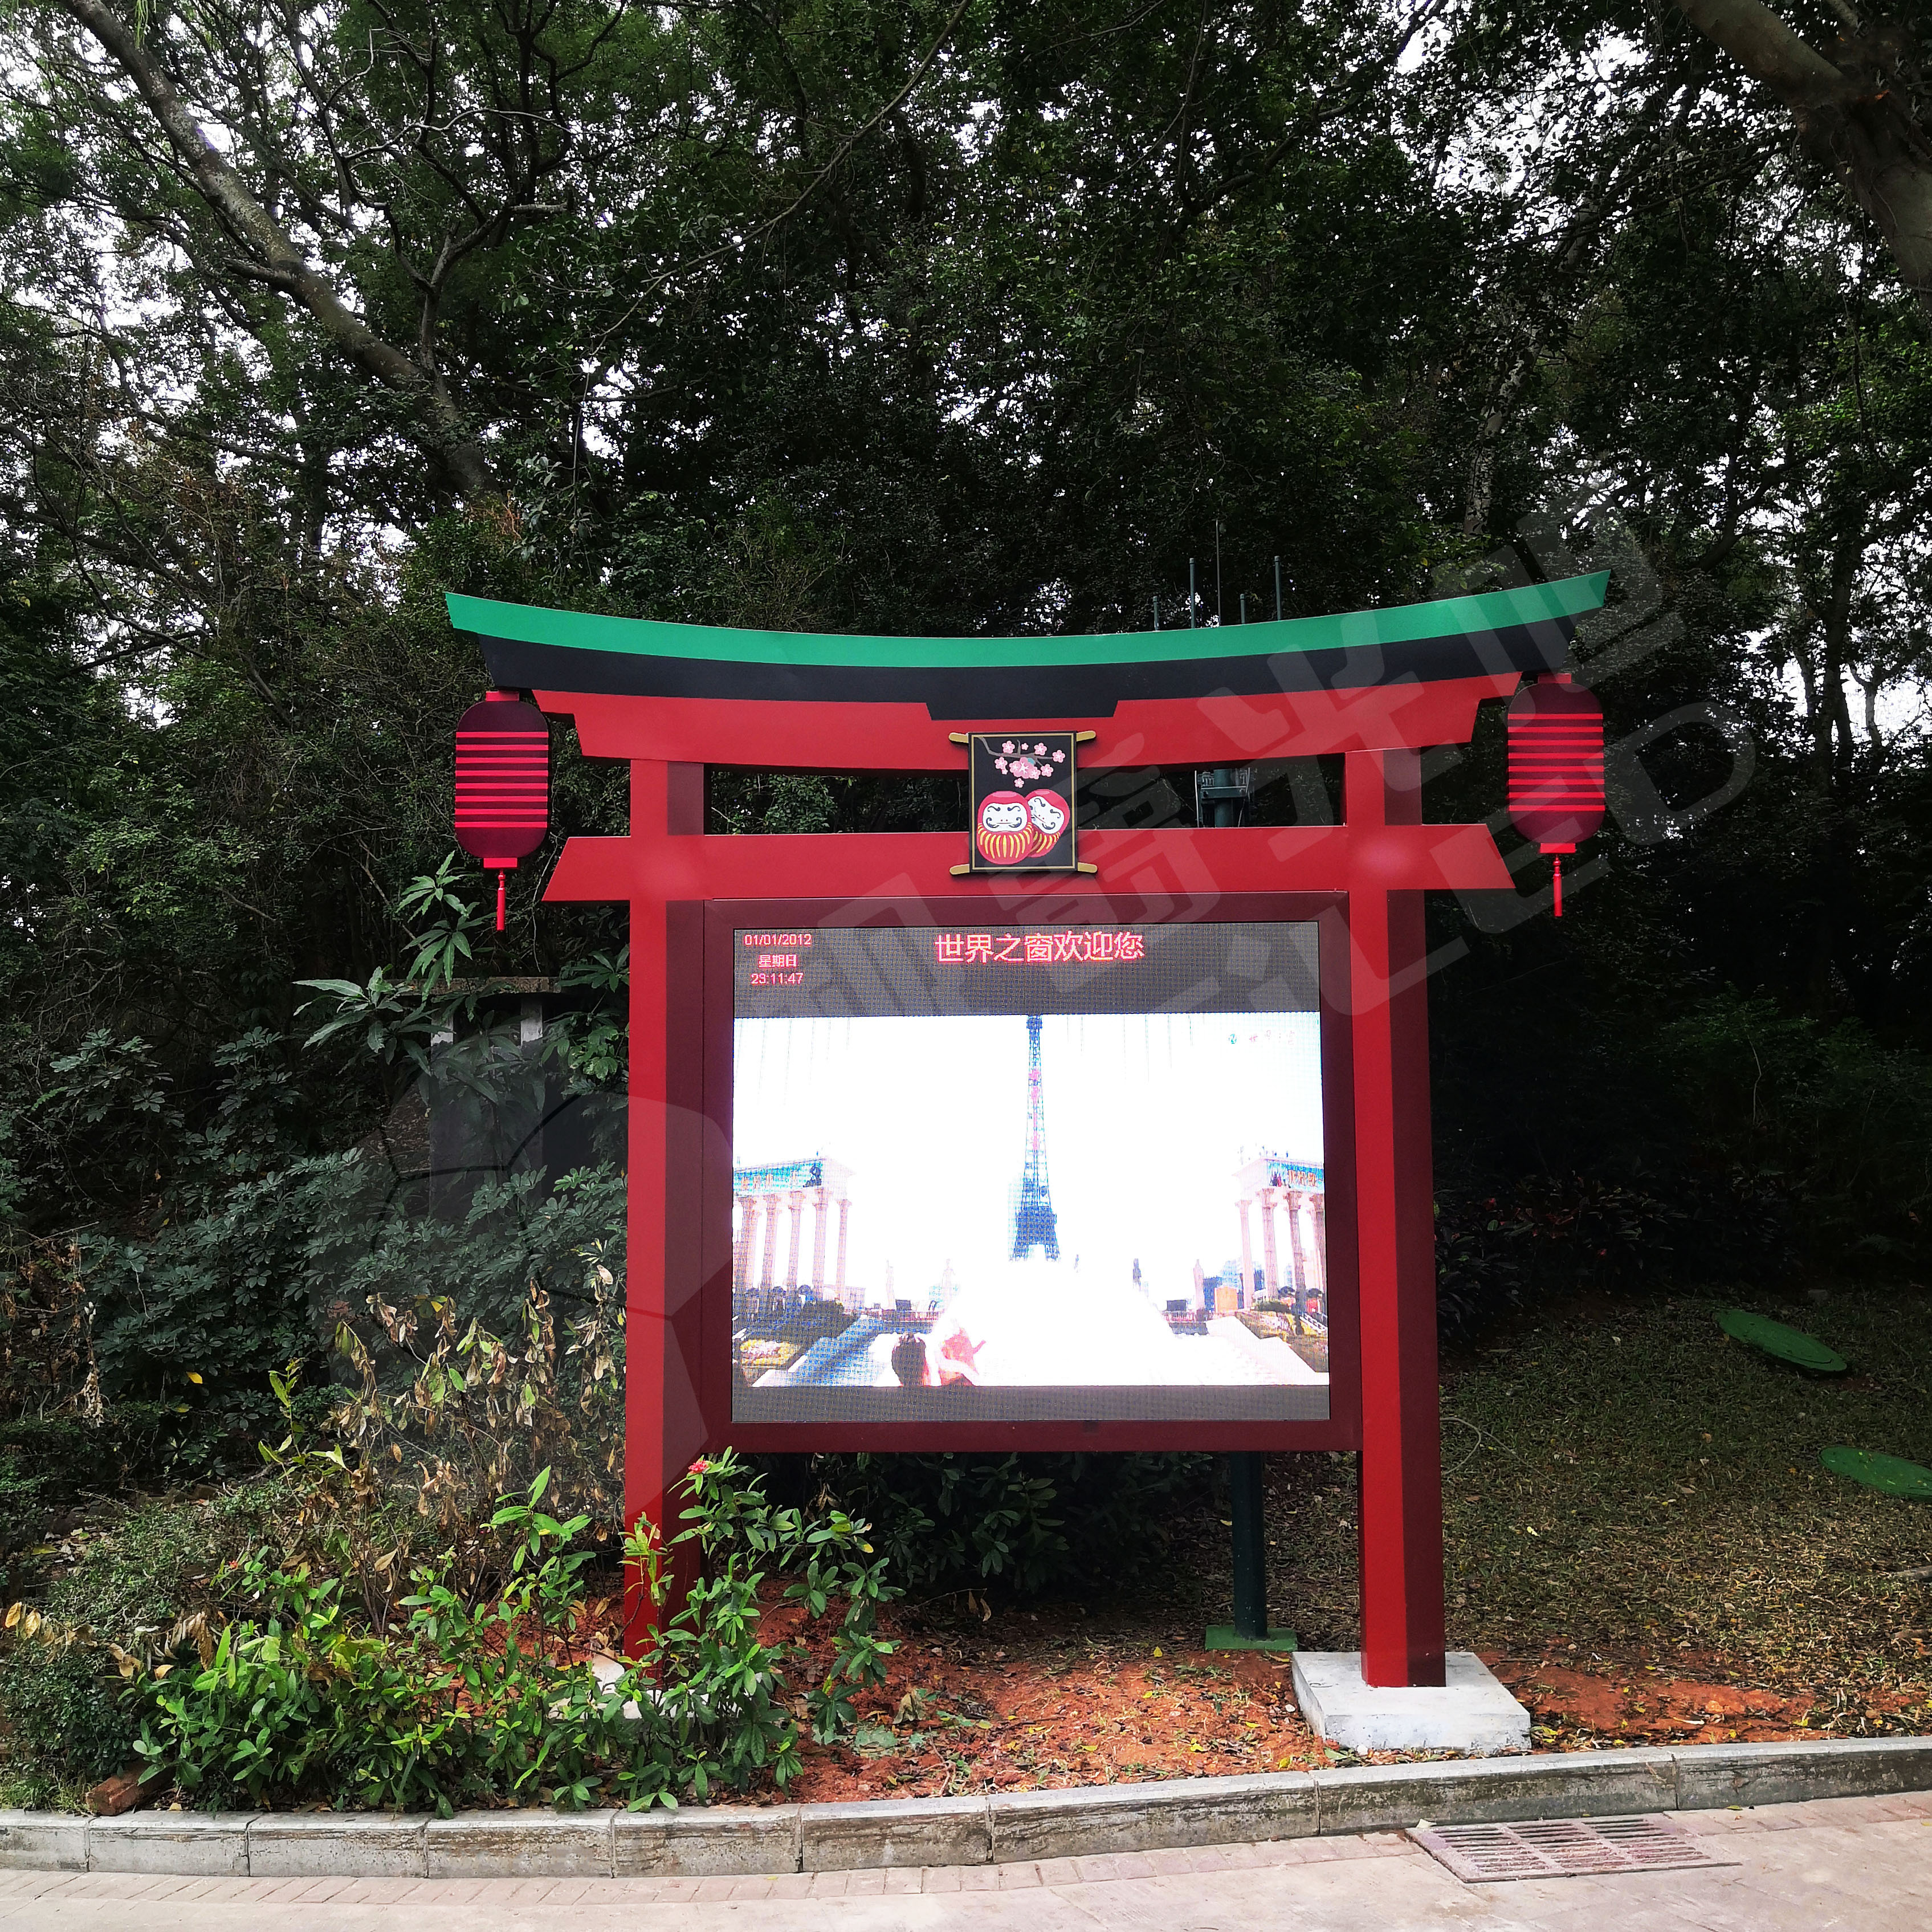 视爵光旭LED显示屏助推5A景区智能化改造，深圳世界之窗日本景区“美颜”再度升级